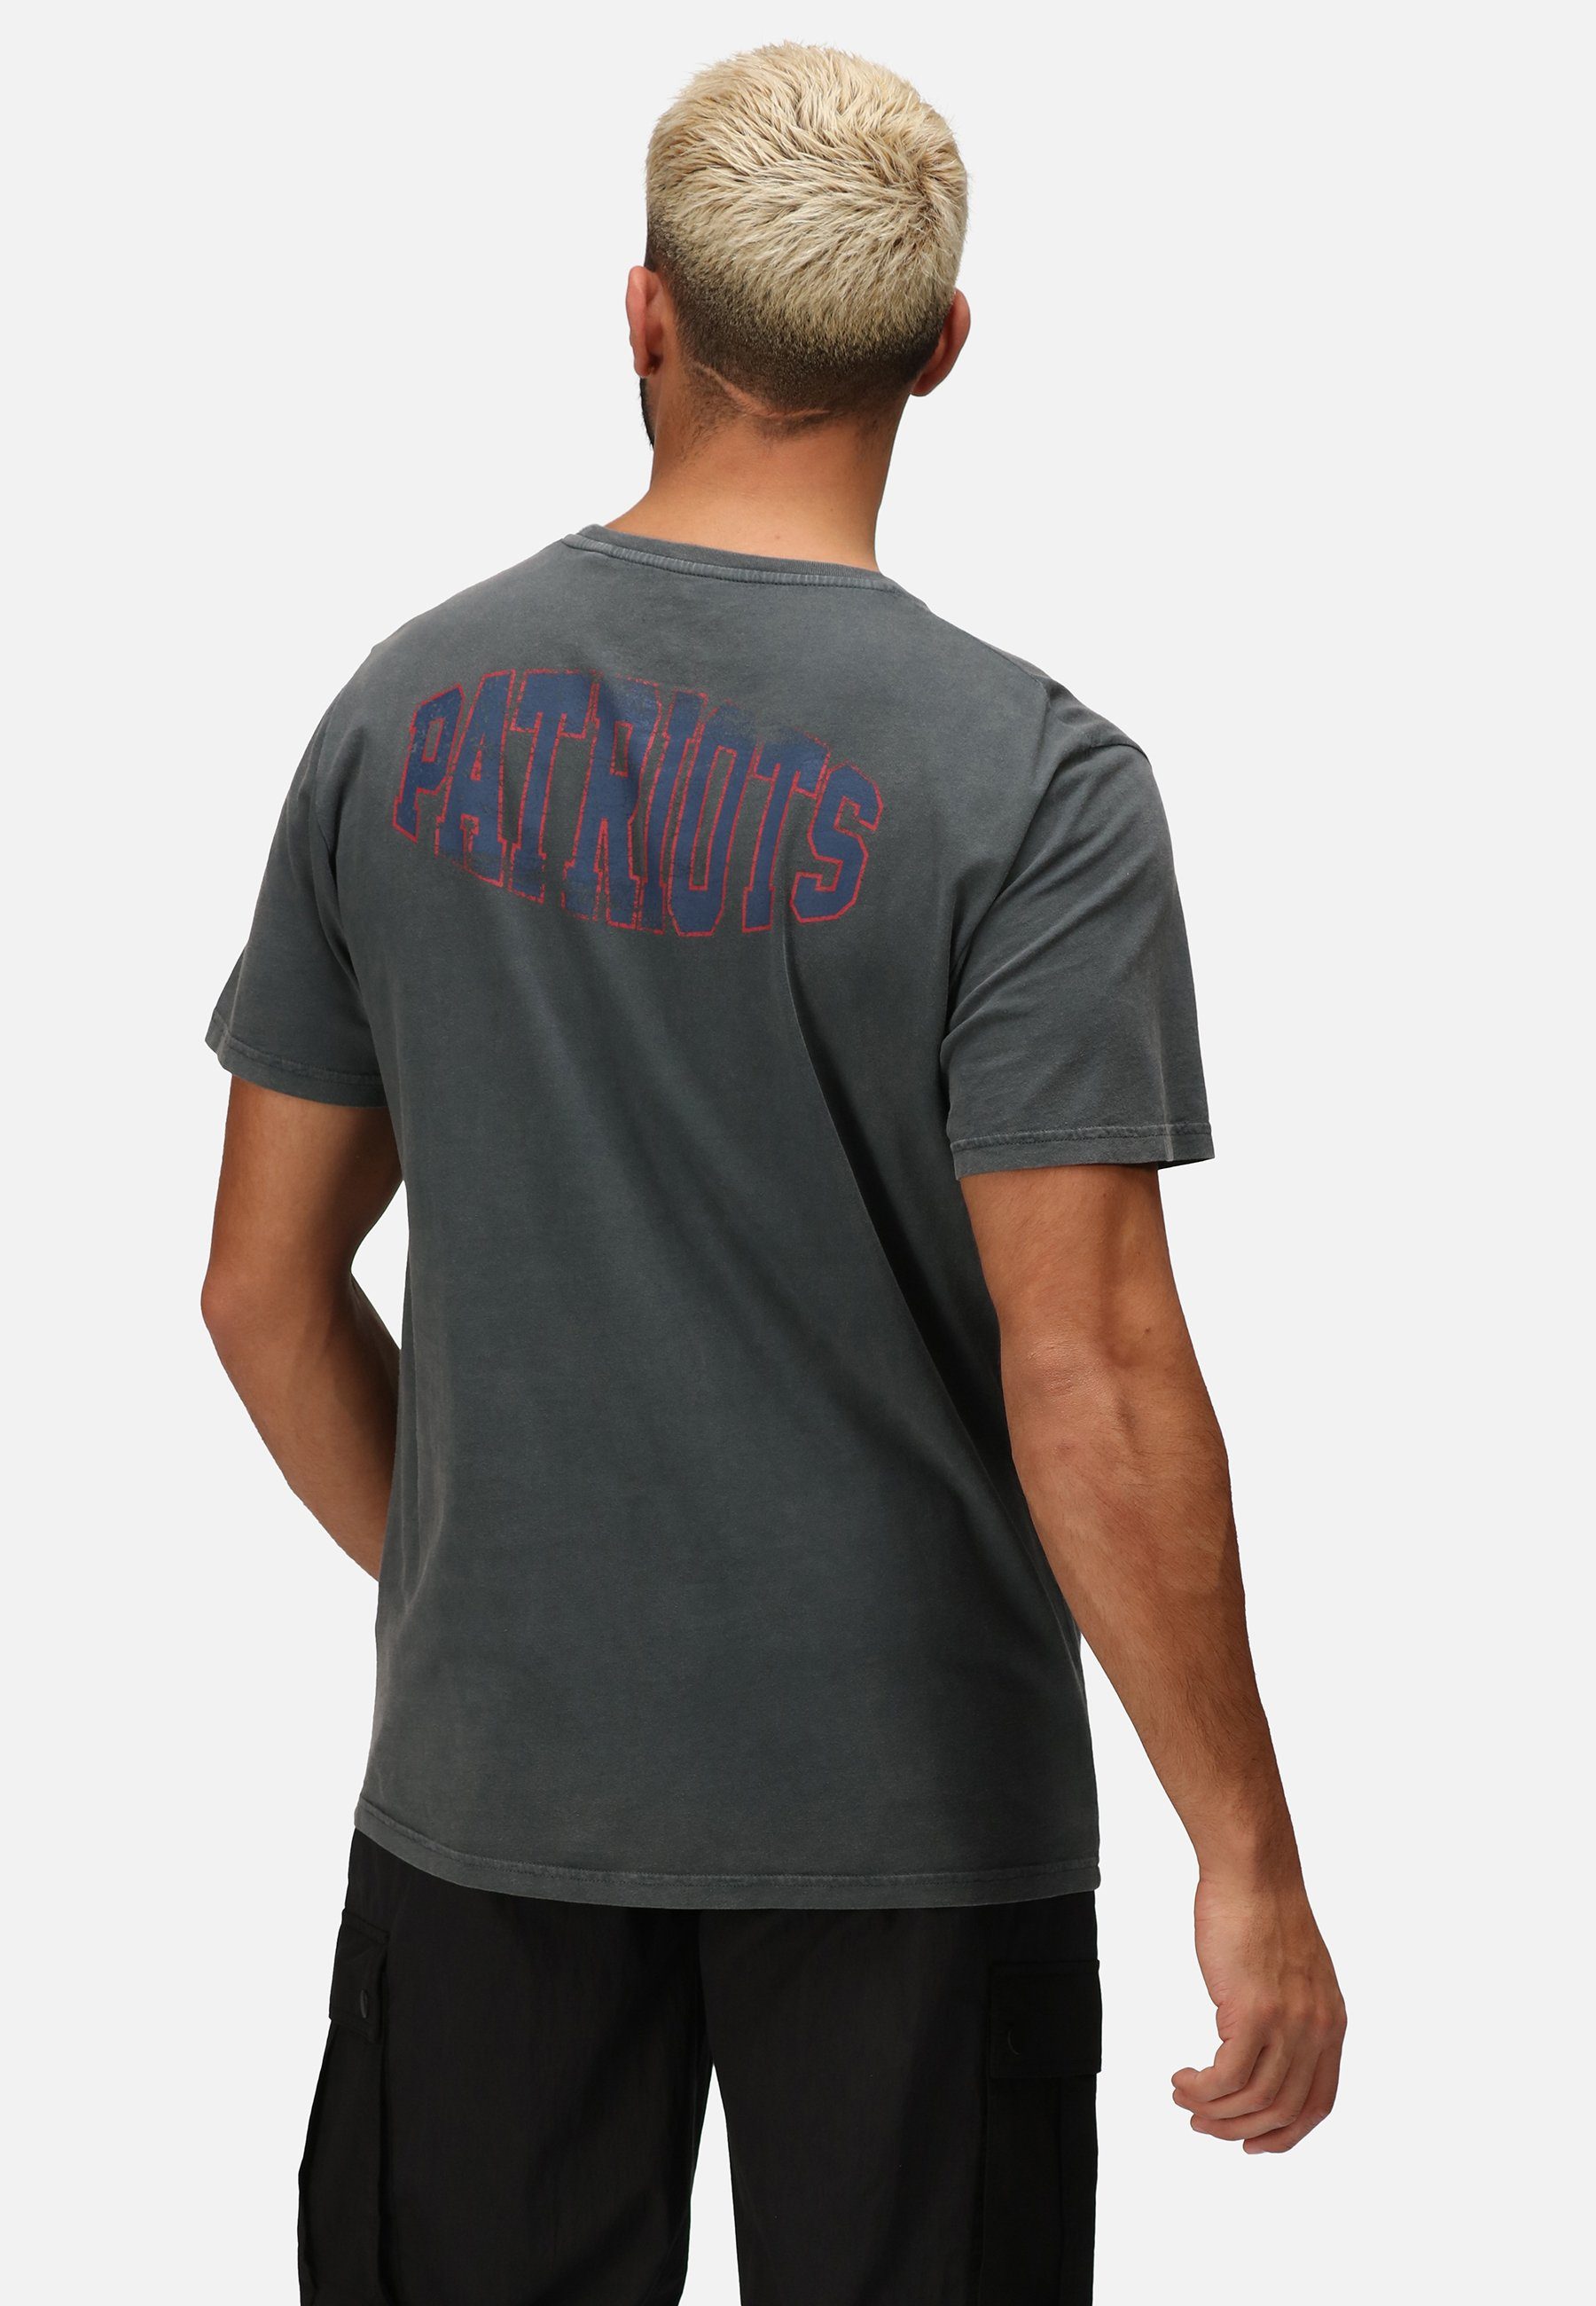 COLLEGE Recovered PATRIOTS GOTS zertifizierte NFL Bio-Baumwolle T-Shirt